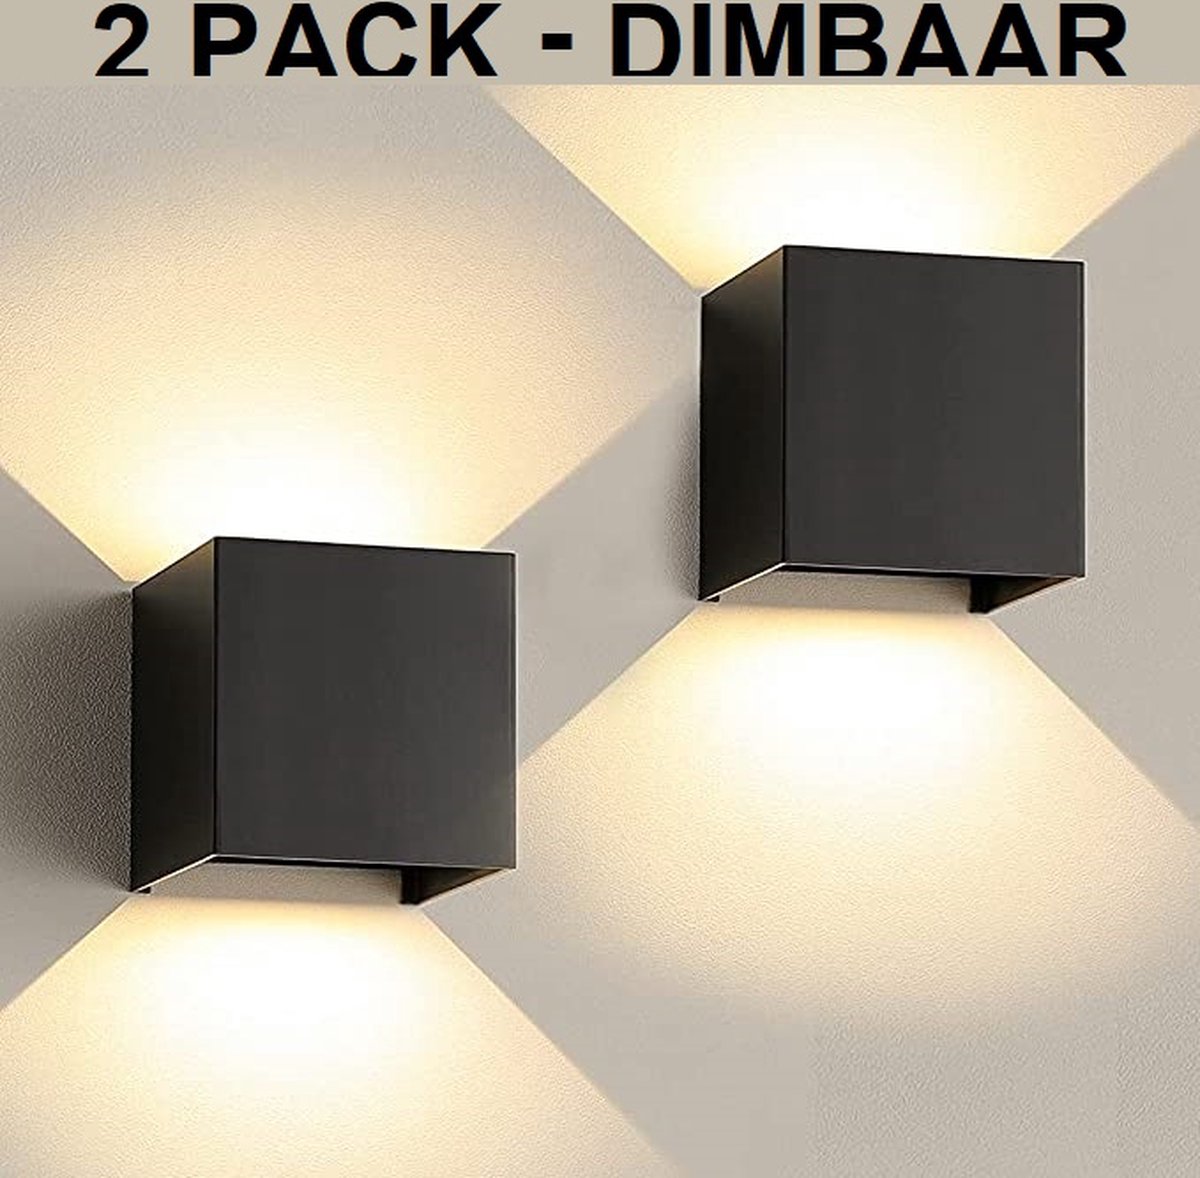 Lampen District - Buiten wandverlichting - Wandlamp buiten - Model 2022 - Dimbaar - Energie zuinig - Warm wit licht